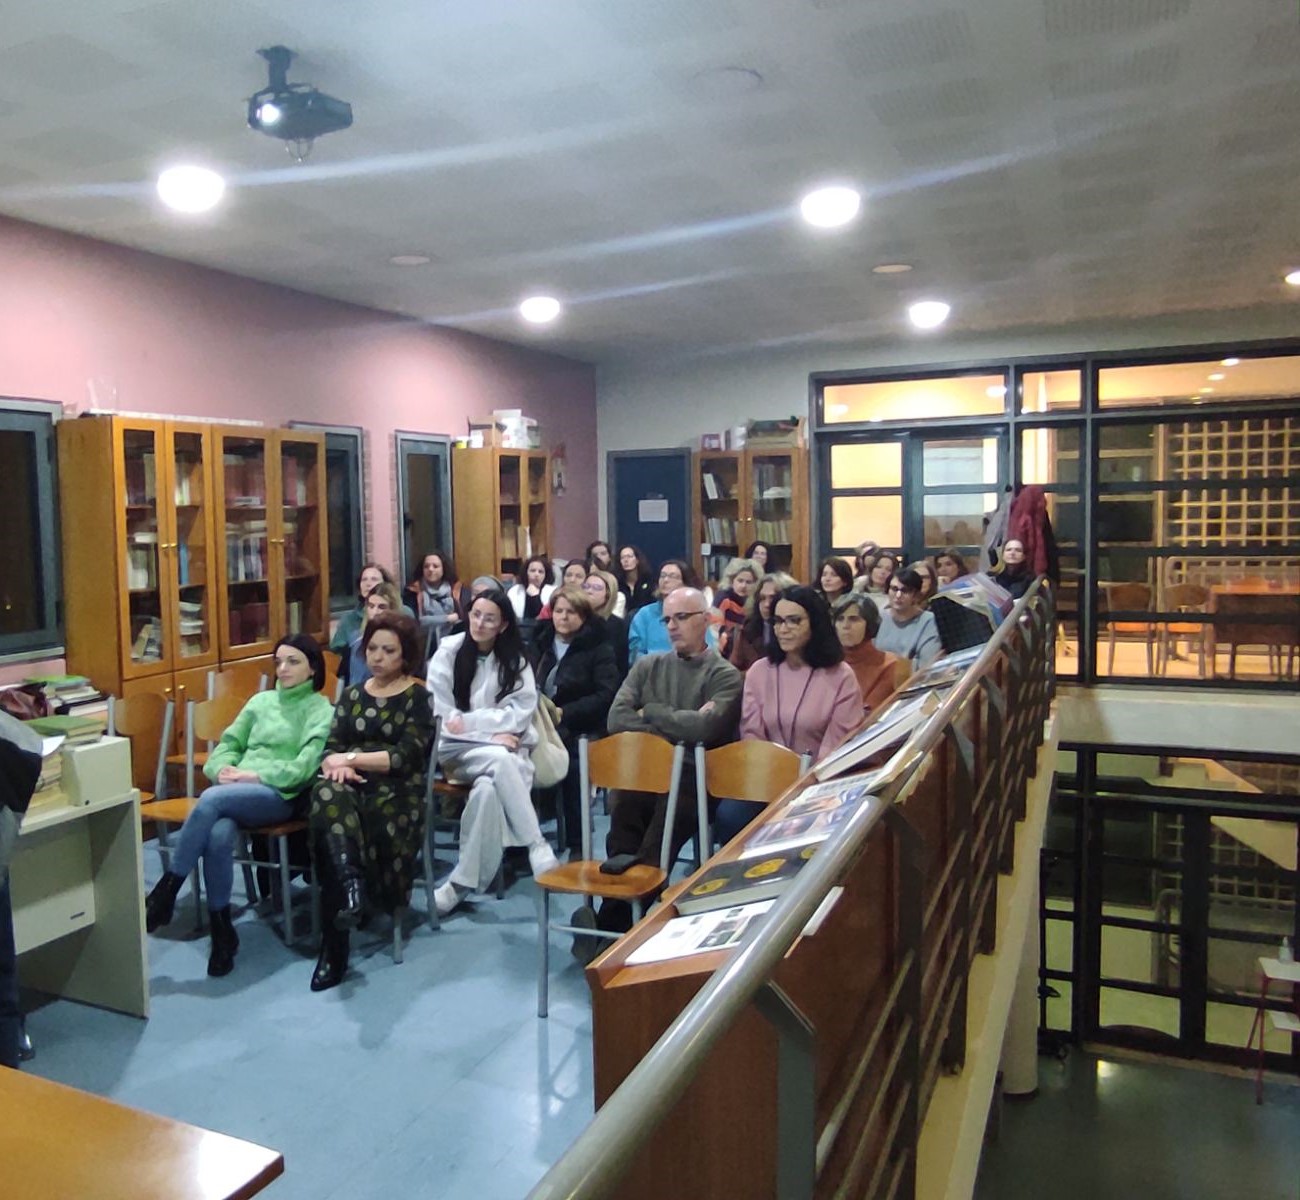 Δημόσια Κεντρική Βιβλιοθήκη Γρεβενών: Εκδήλωση με θέμα “Ψυχική ανθεκτικότητα”